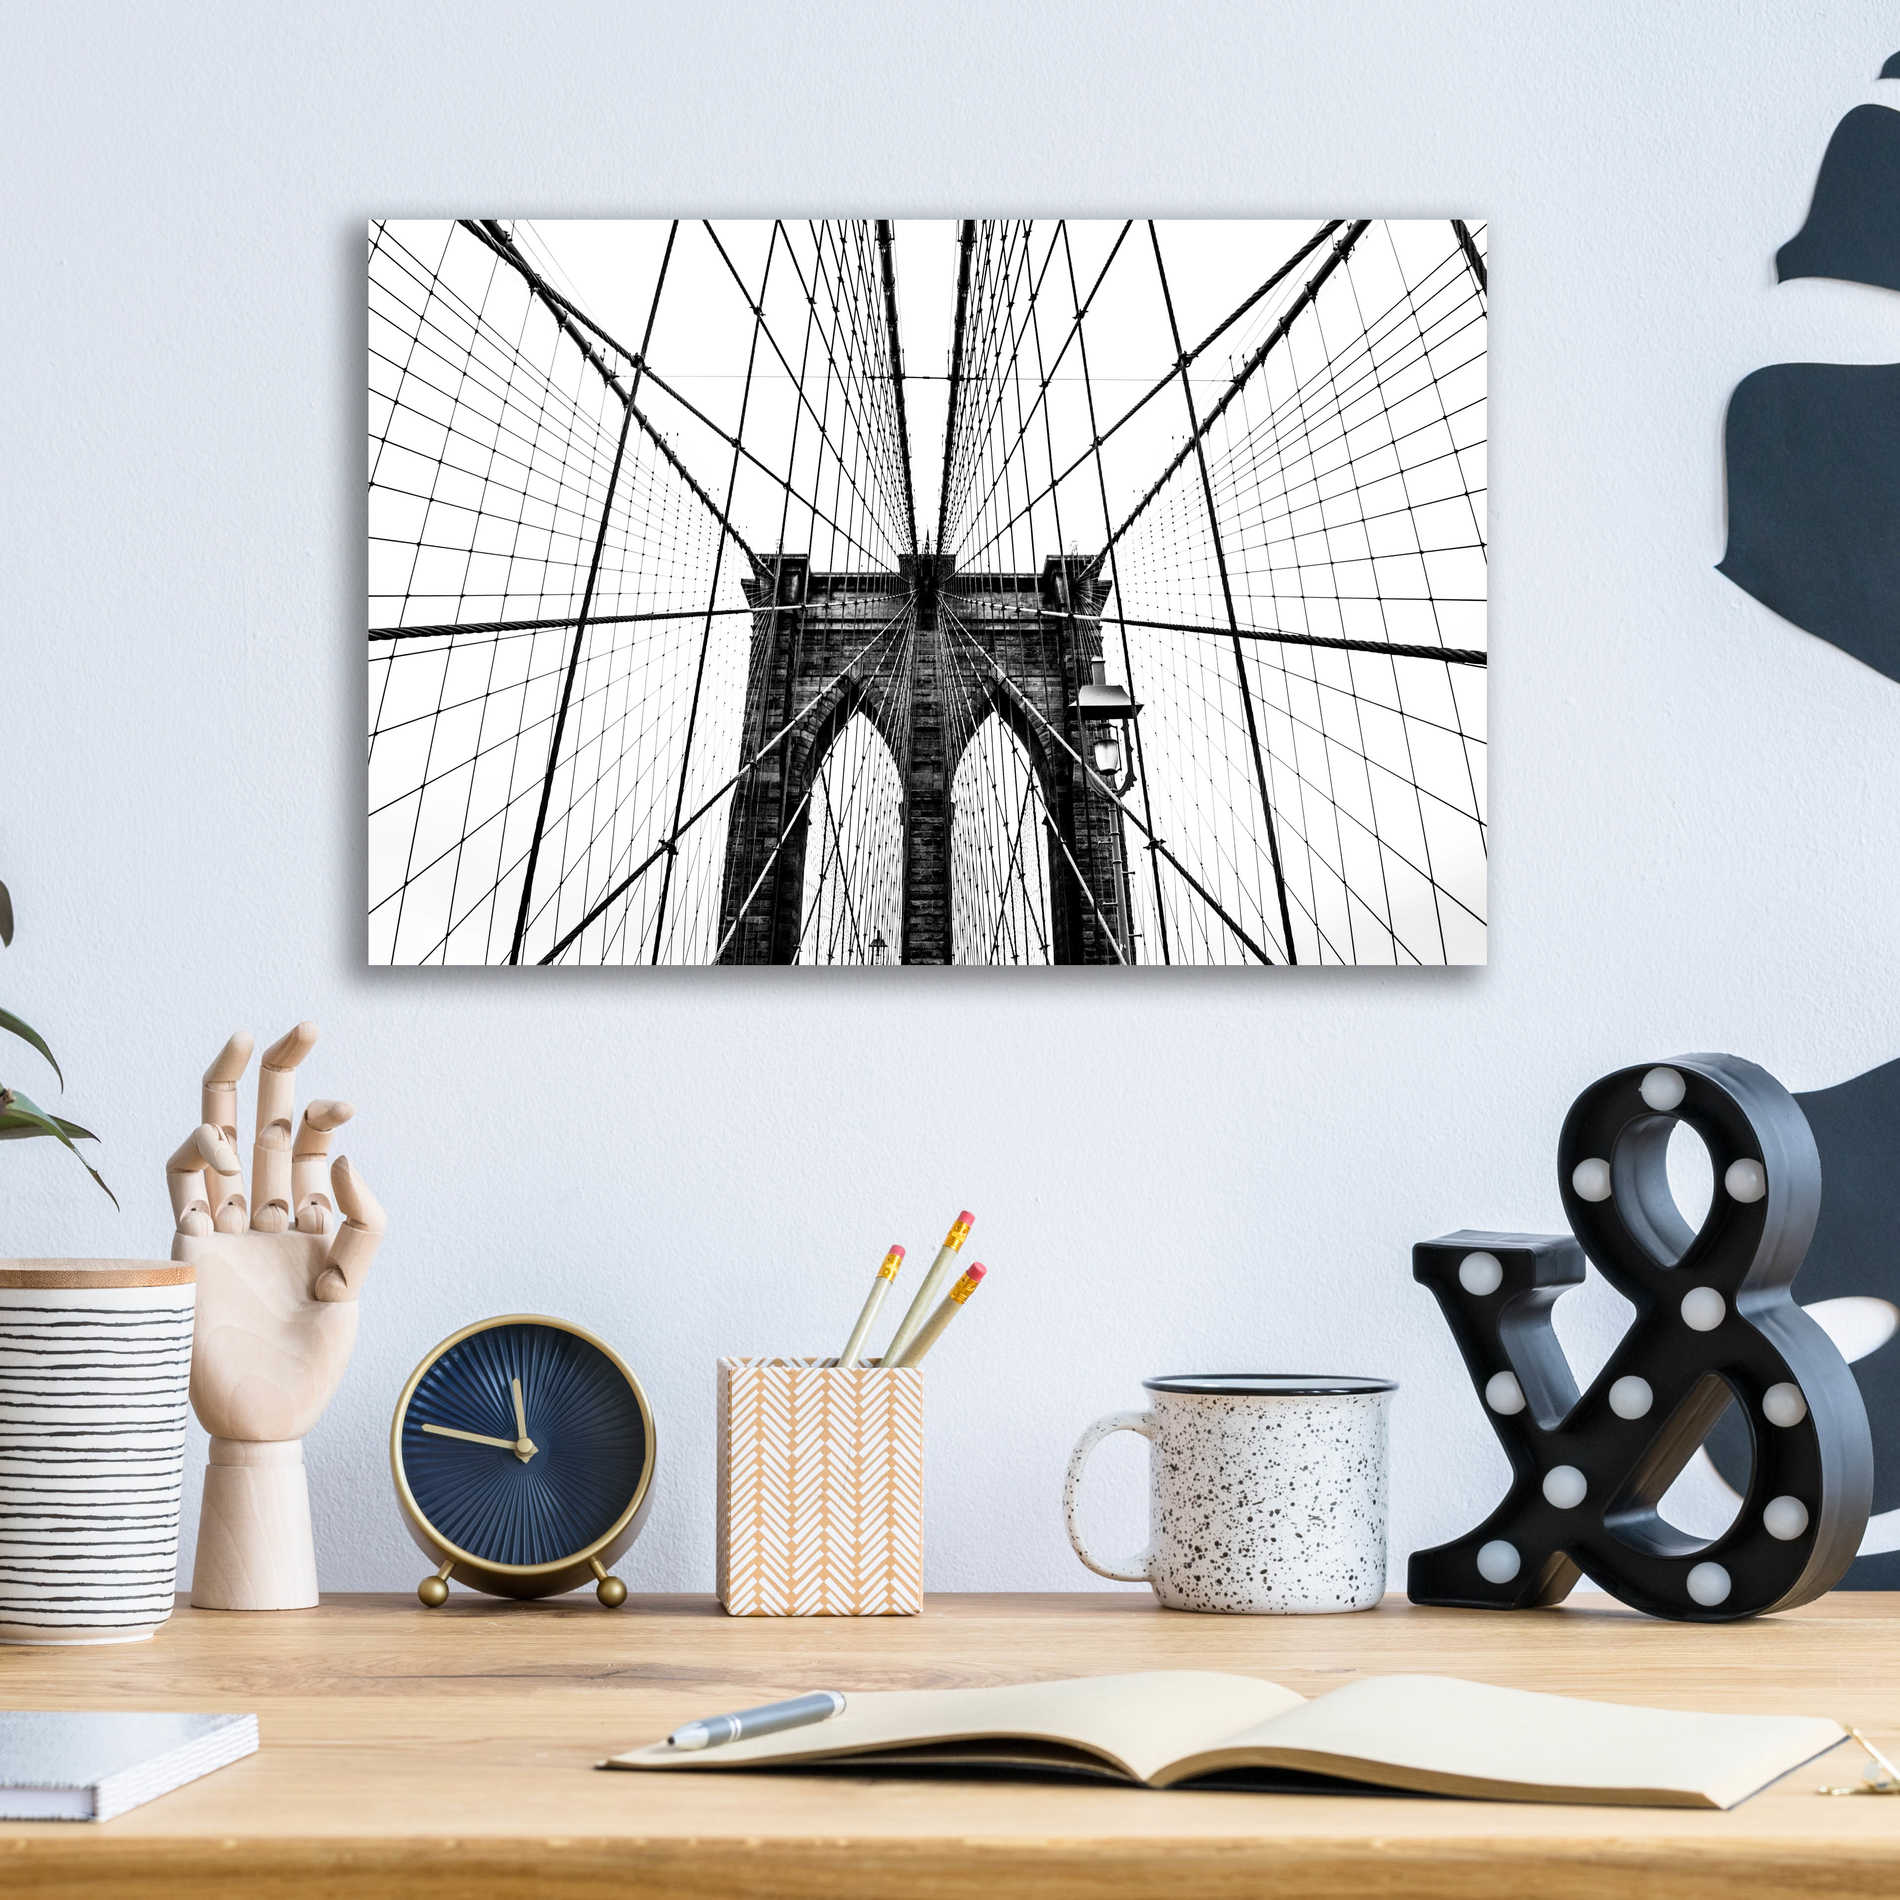 Epic Art 'Brooklyn Bridge Web' by Nicklas Gustafsson Acrylic Glass Wall Art,16x12